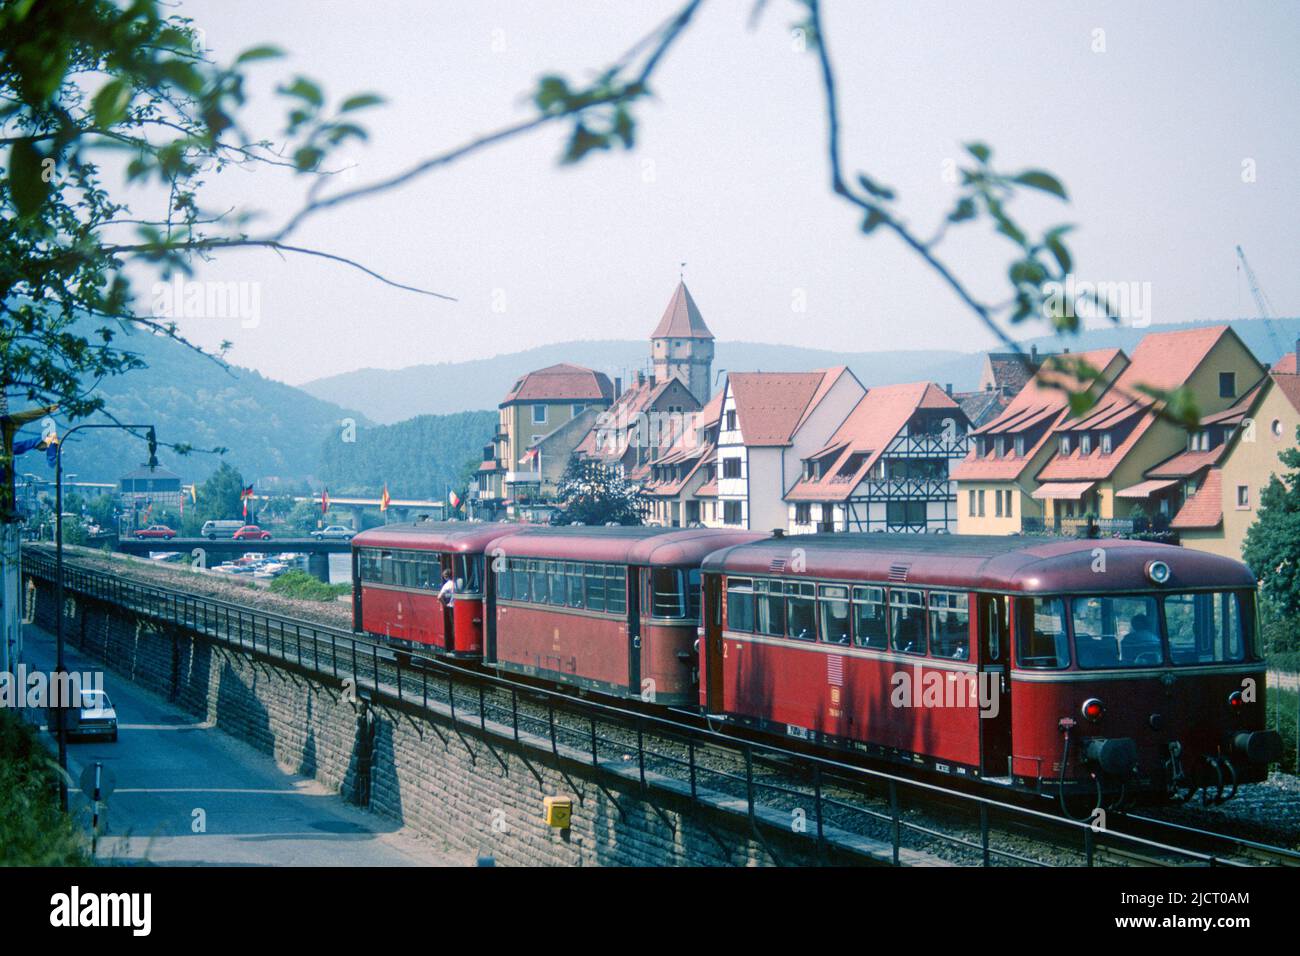 Uerdingen railbus in 1982, Wertheim, Bavaria, Germany Stock Photo